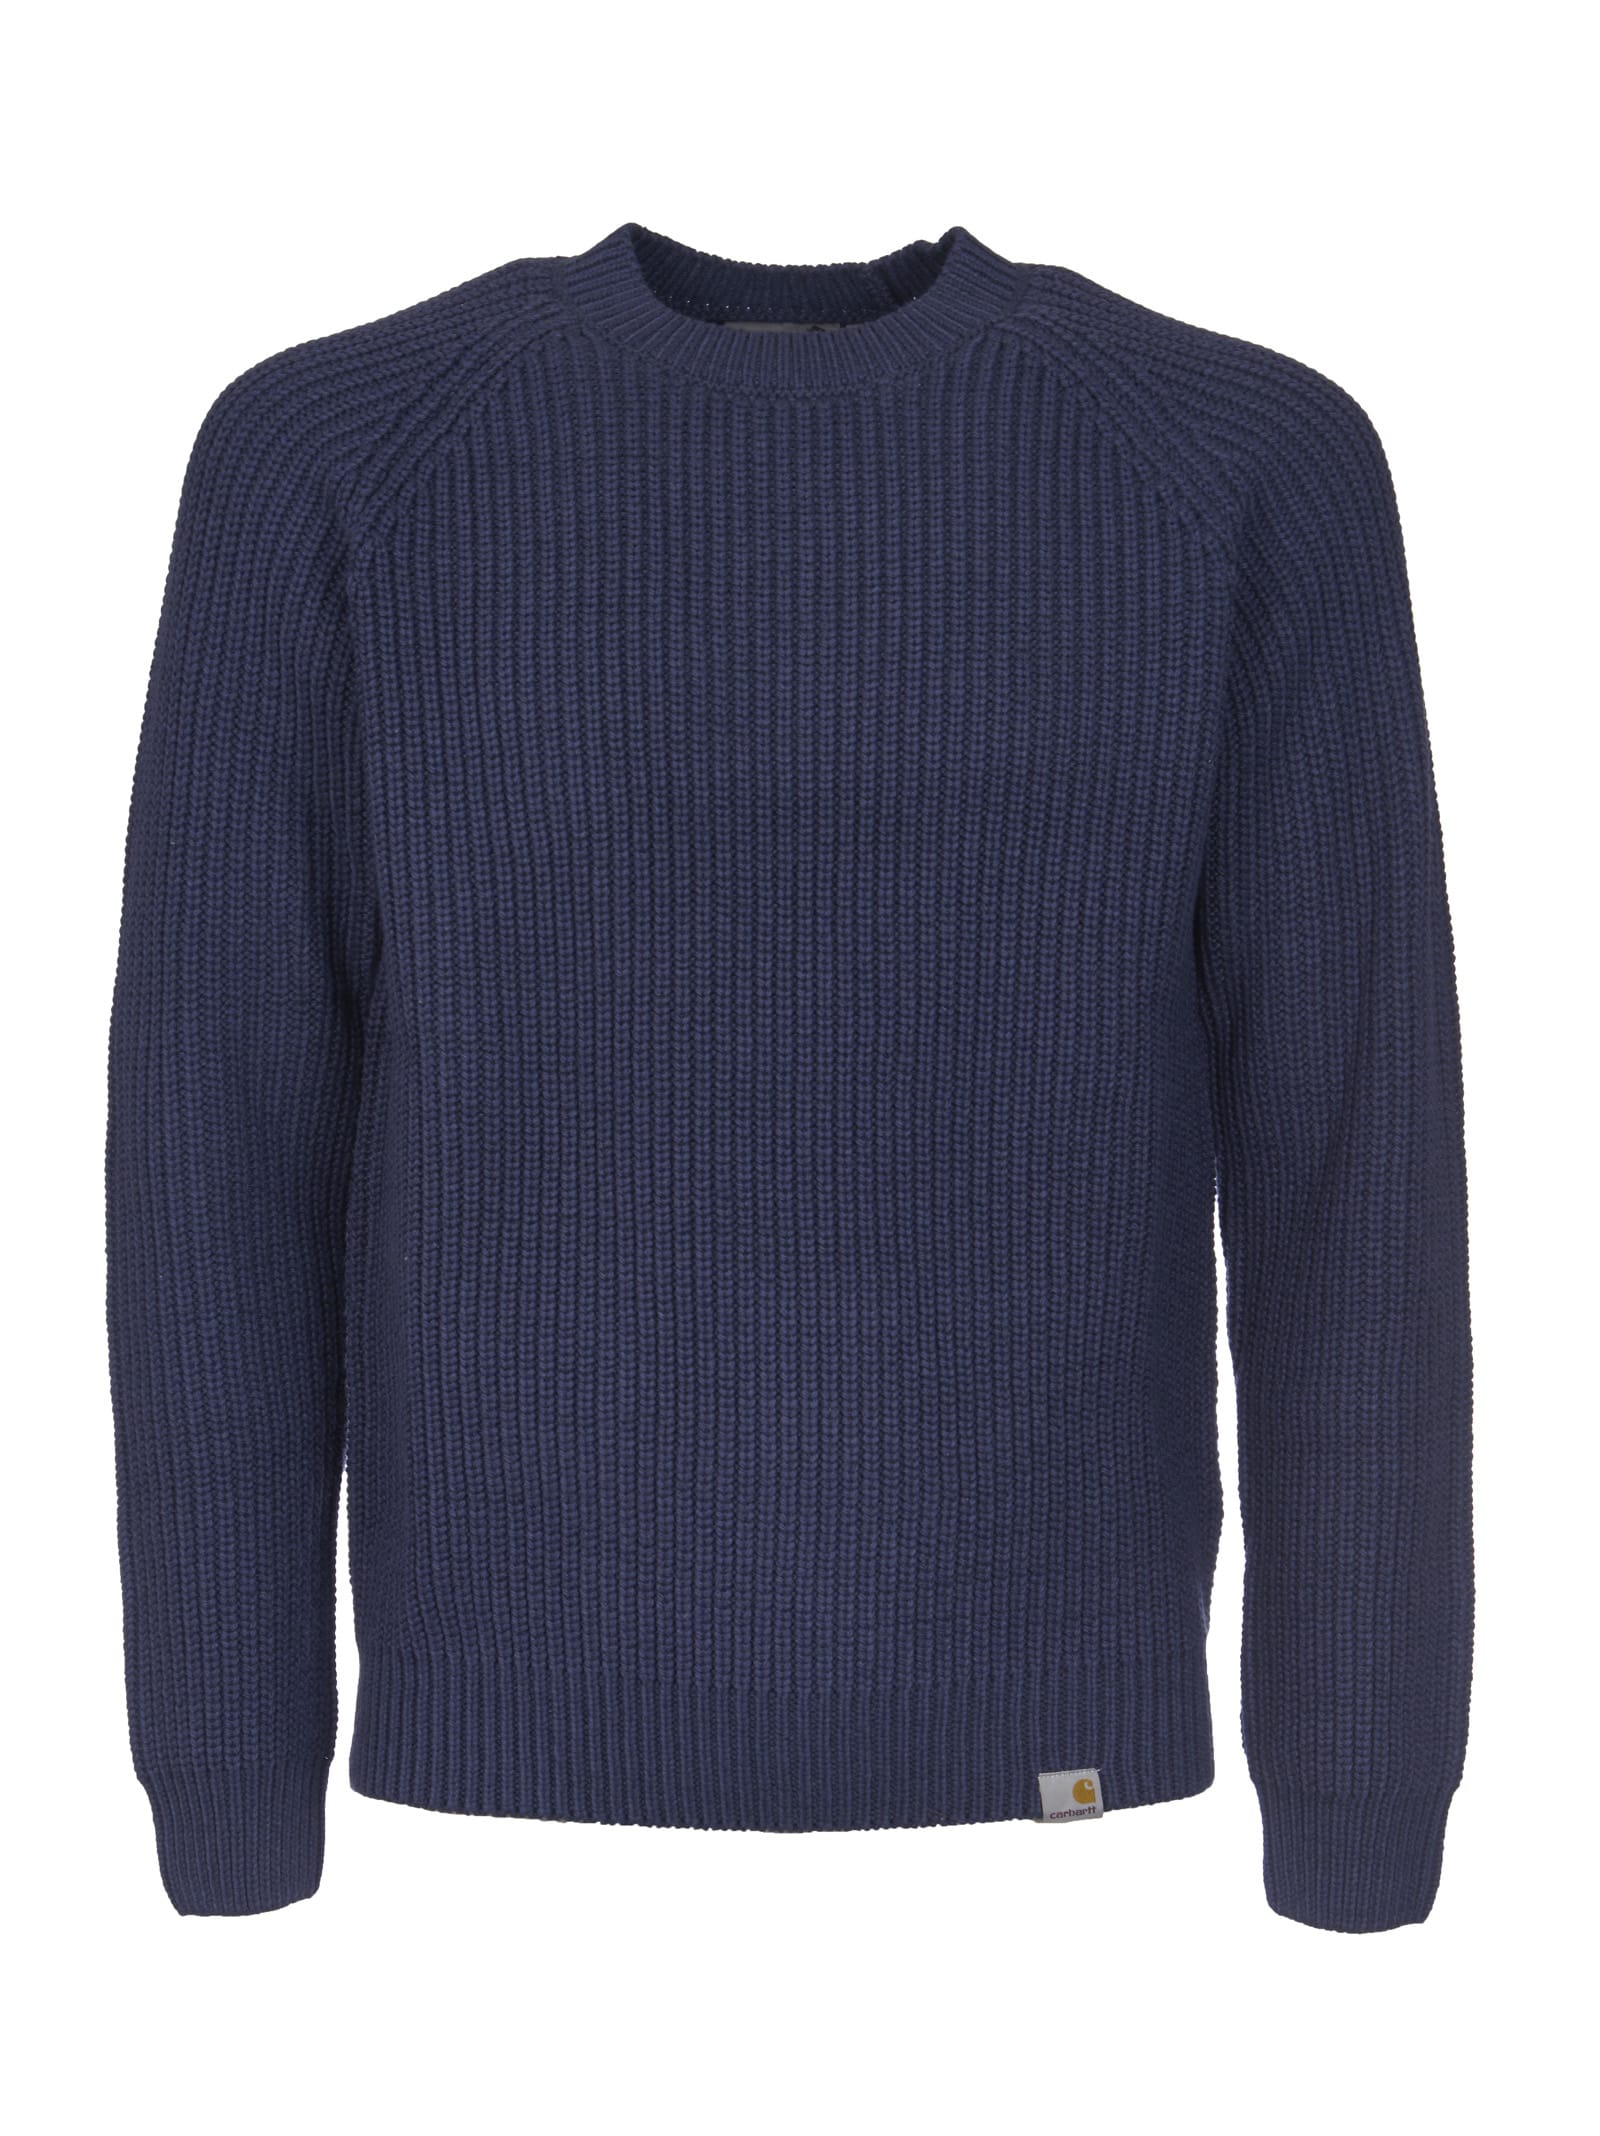 Carhartt Rib Knit Plain Sweater